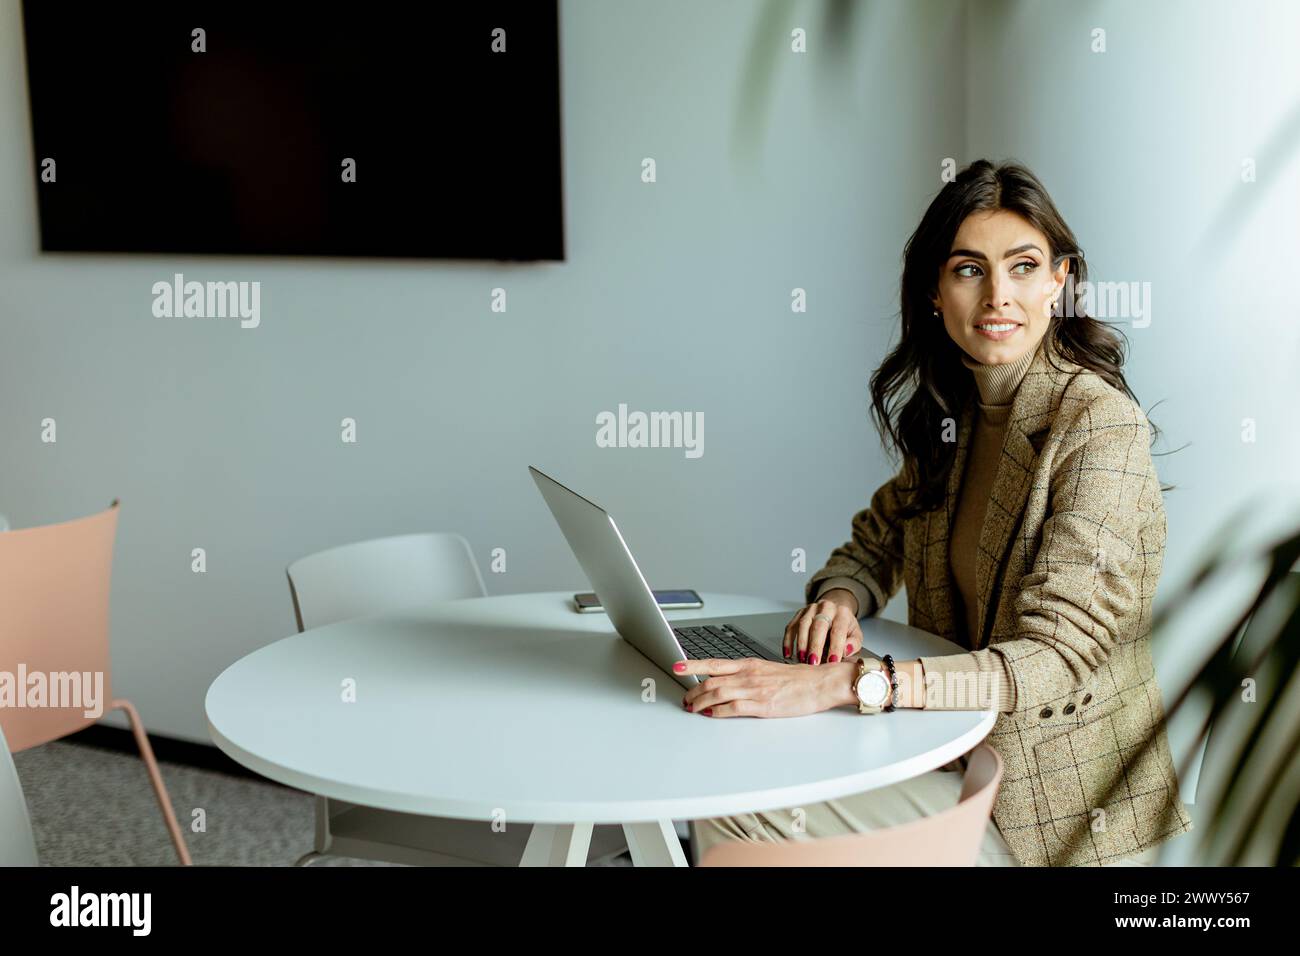 Eine konzentrierte Geschäftsfrau in einem stilvollen Blazer lässt sich auf ihrem Laptop an einem eleganten, weißen Tisch, umgeben von minimalistischem Dekor, verstecken. Stockfoto